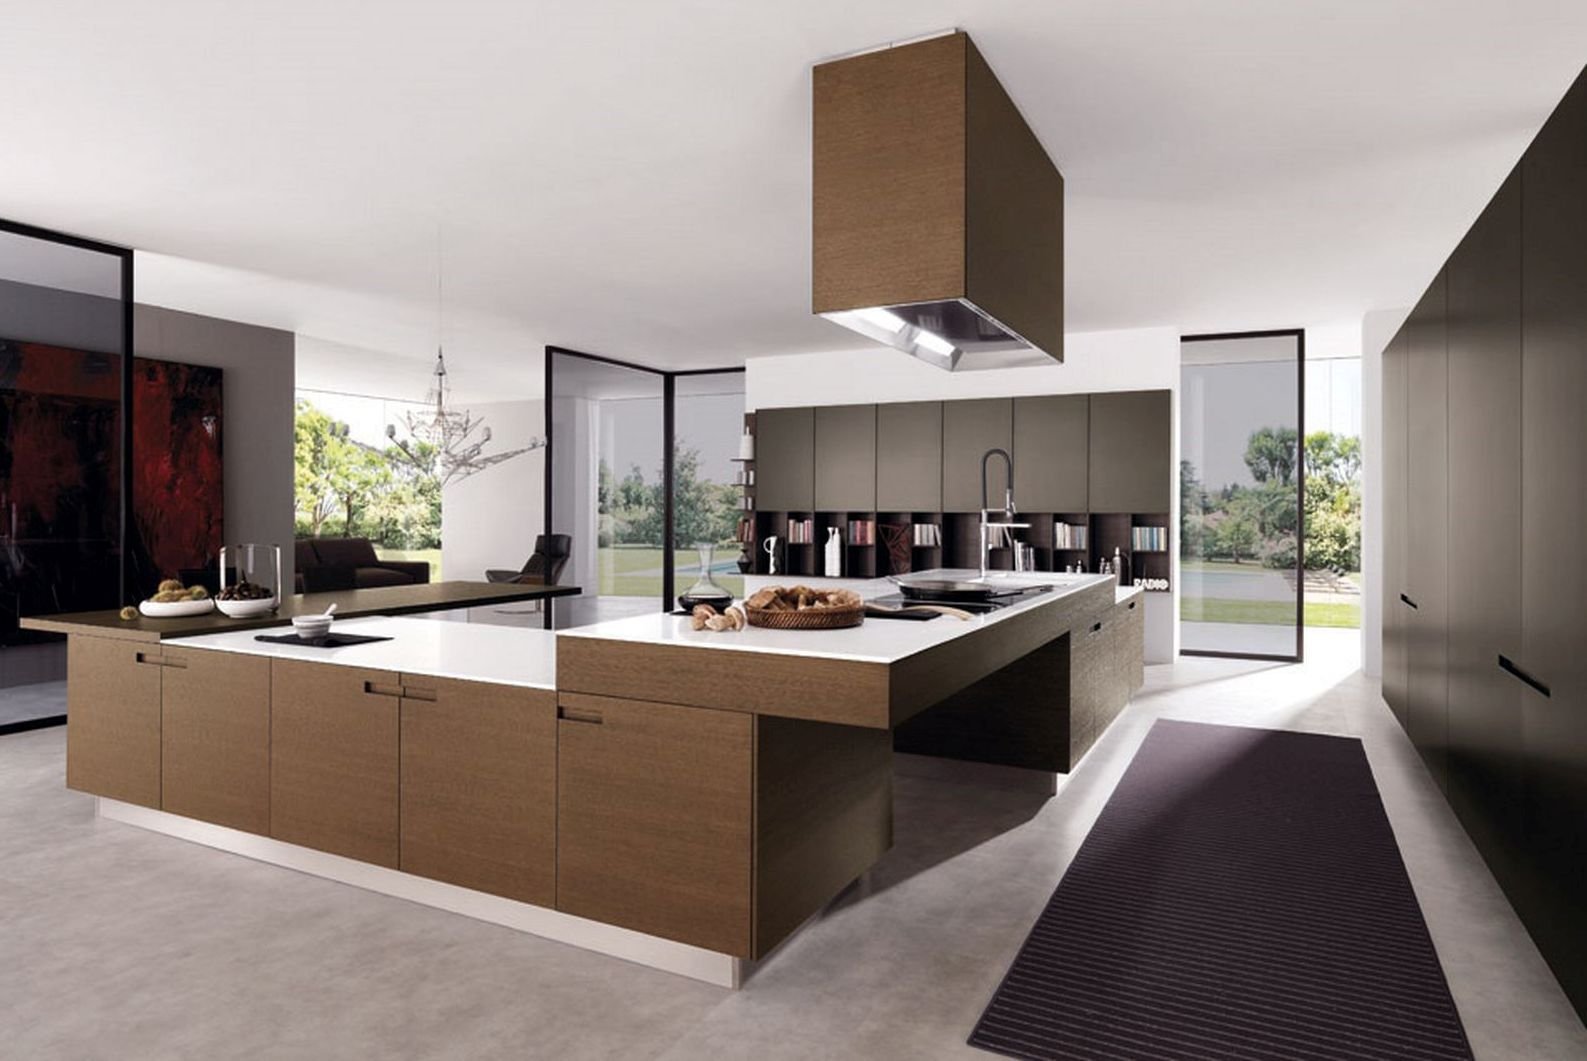 modern-kitchen-ideas-simple-design-7-on-kitchen-design-ideas